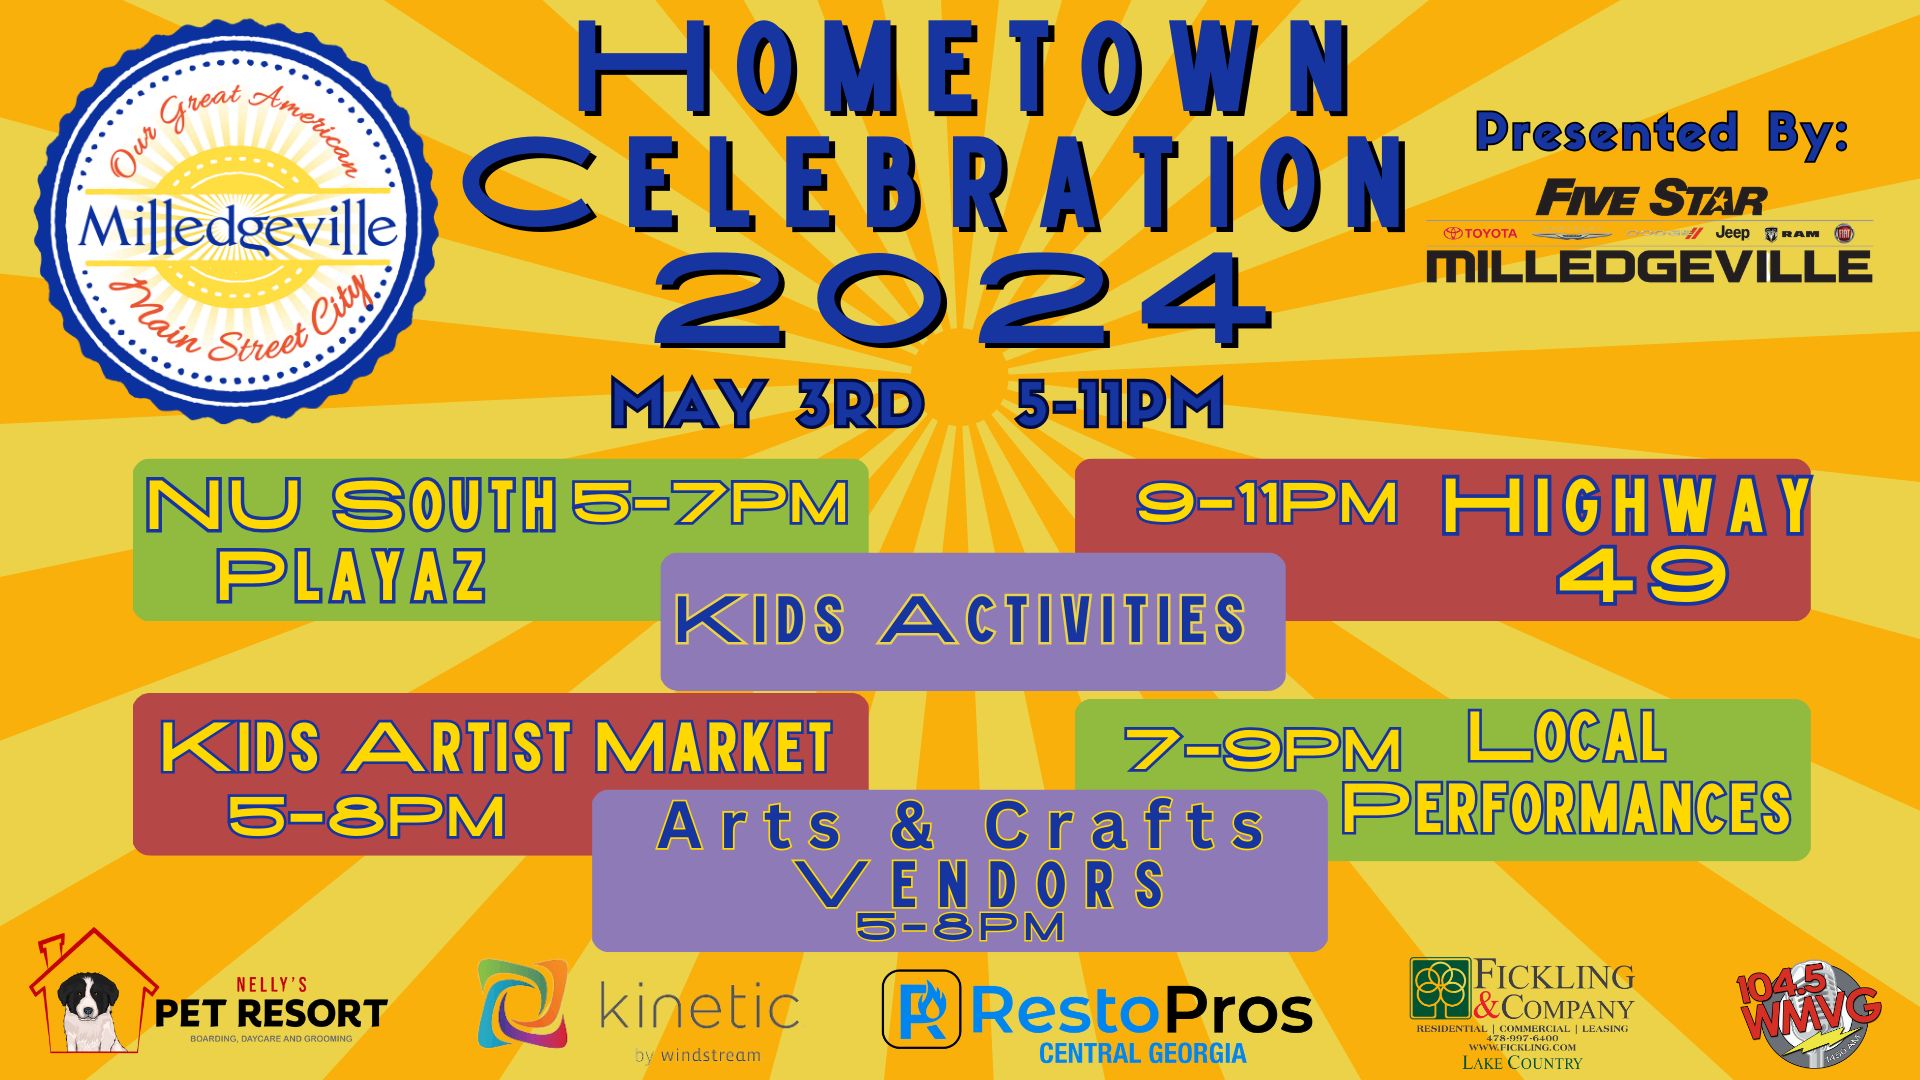 Hometown celebration event flyer